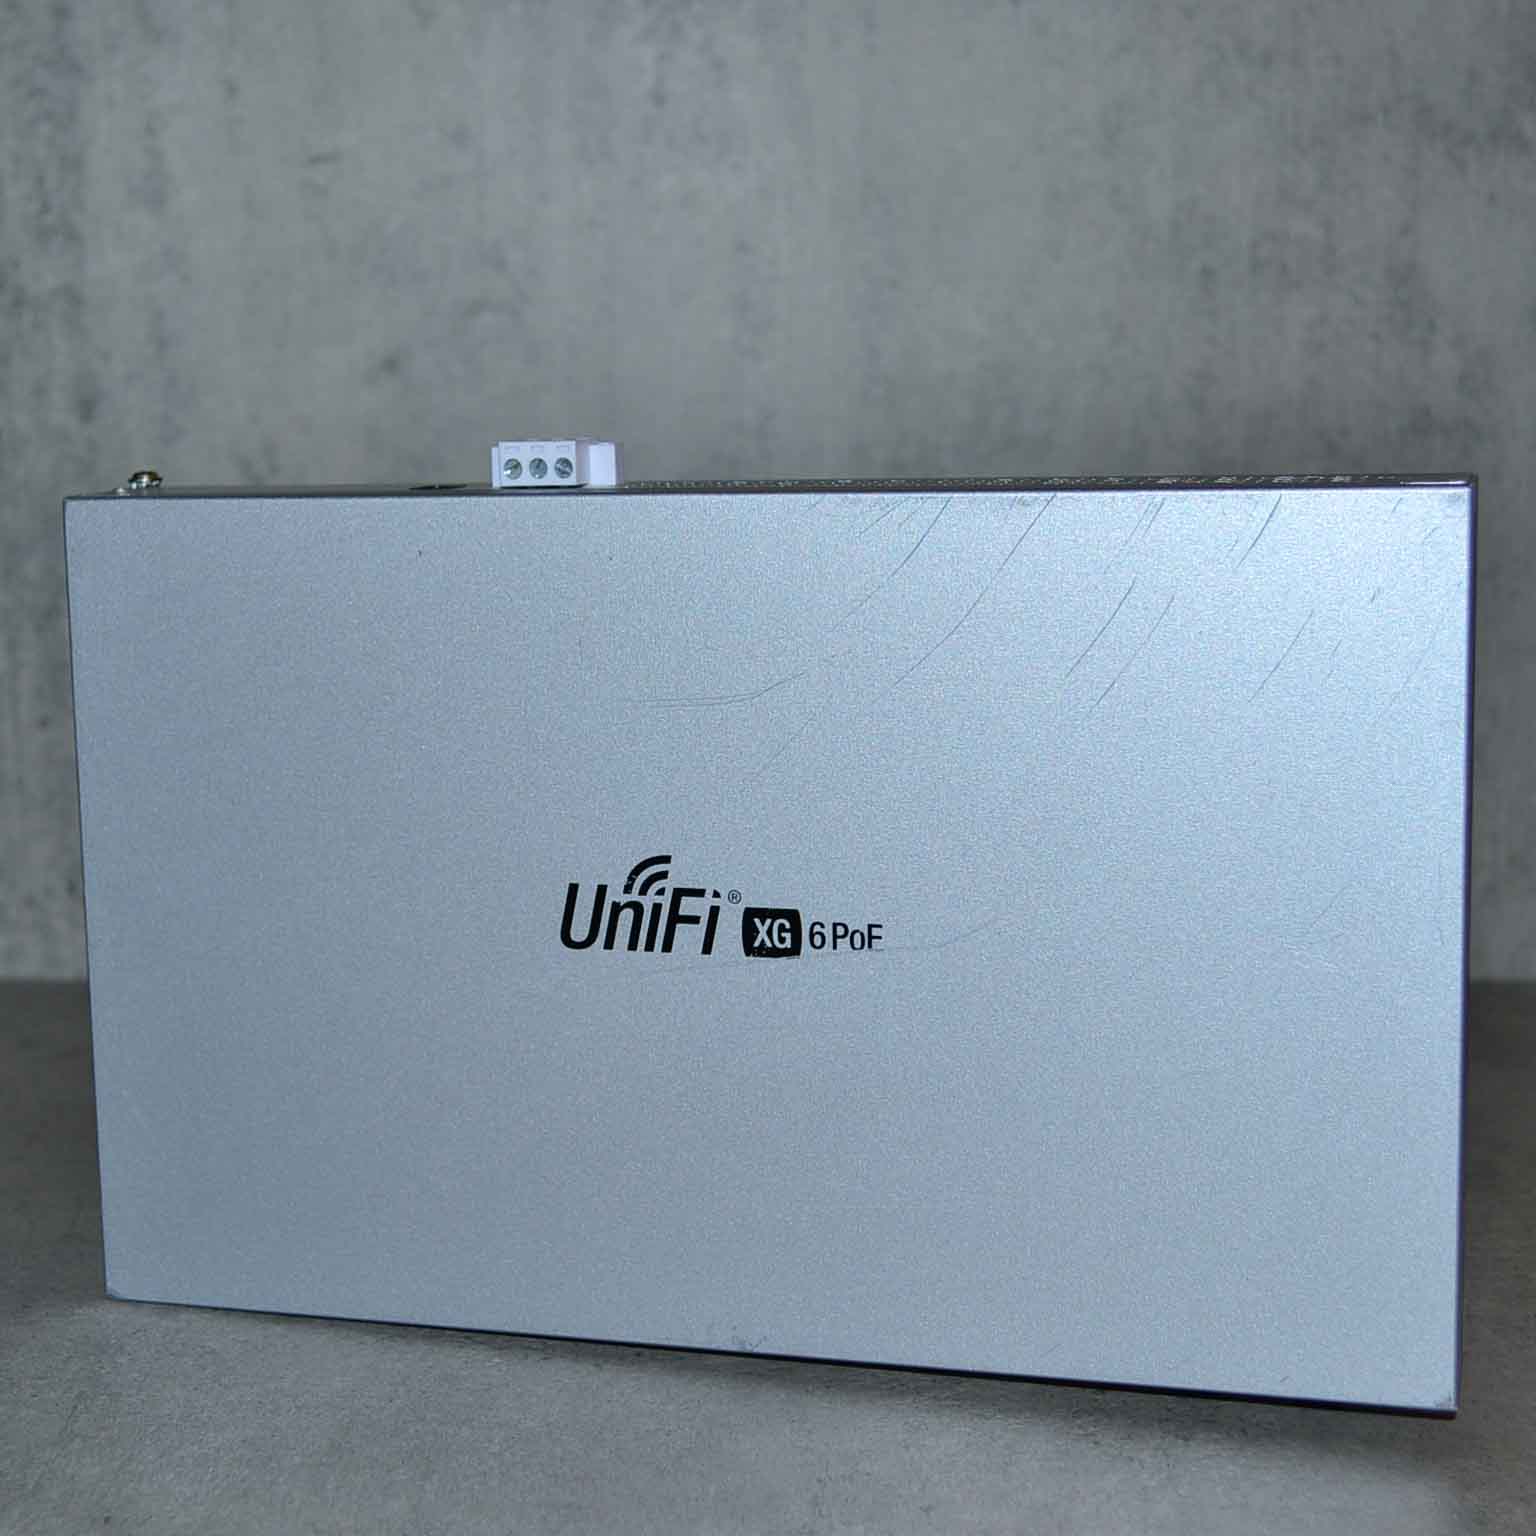 UniFi XG 6 PoE, US-XG-6POE